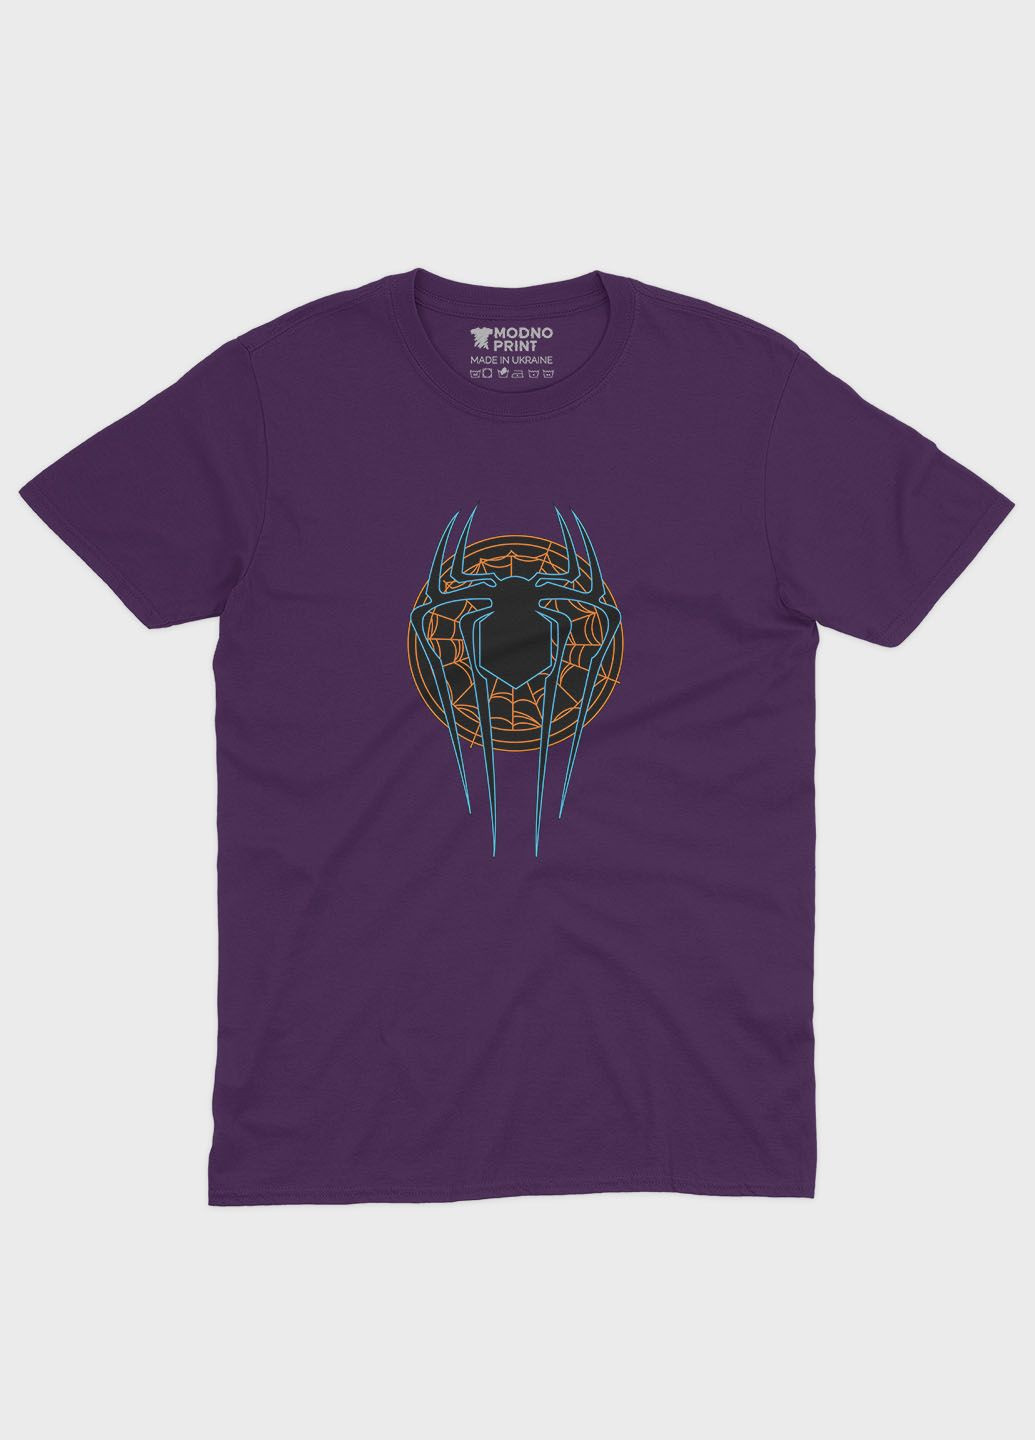 Фиолетовая демисезонная футболка для девочки с принтом супергероя - человек-паук (ts001-1-dby-006-014-093-g) Modno